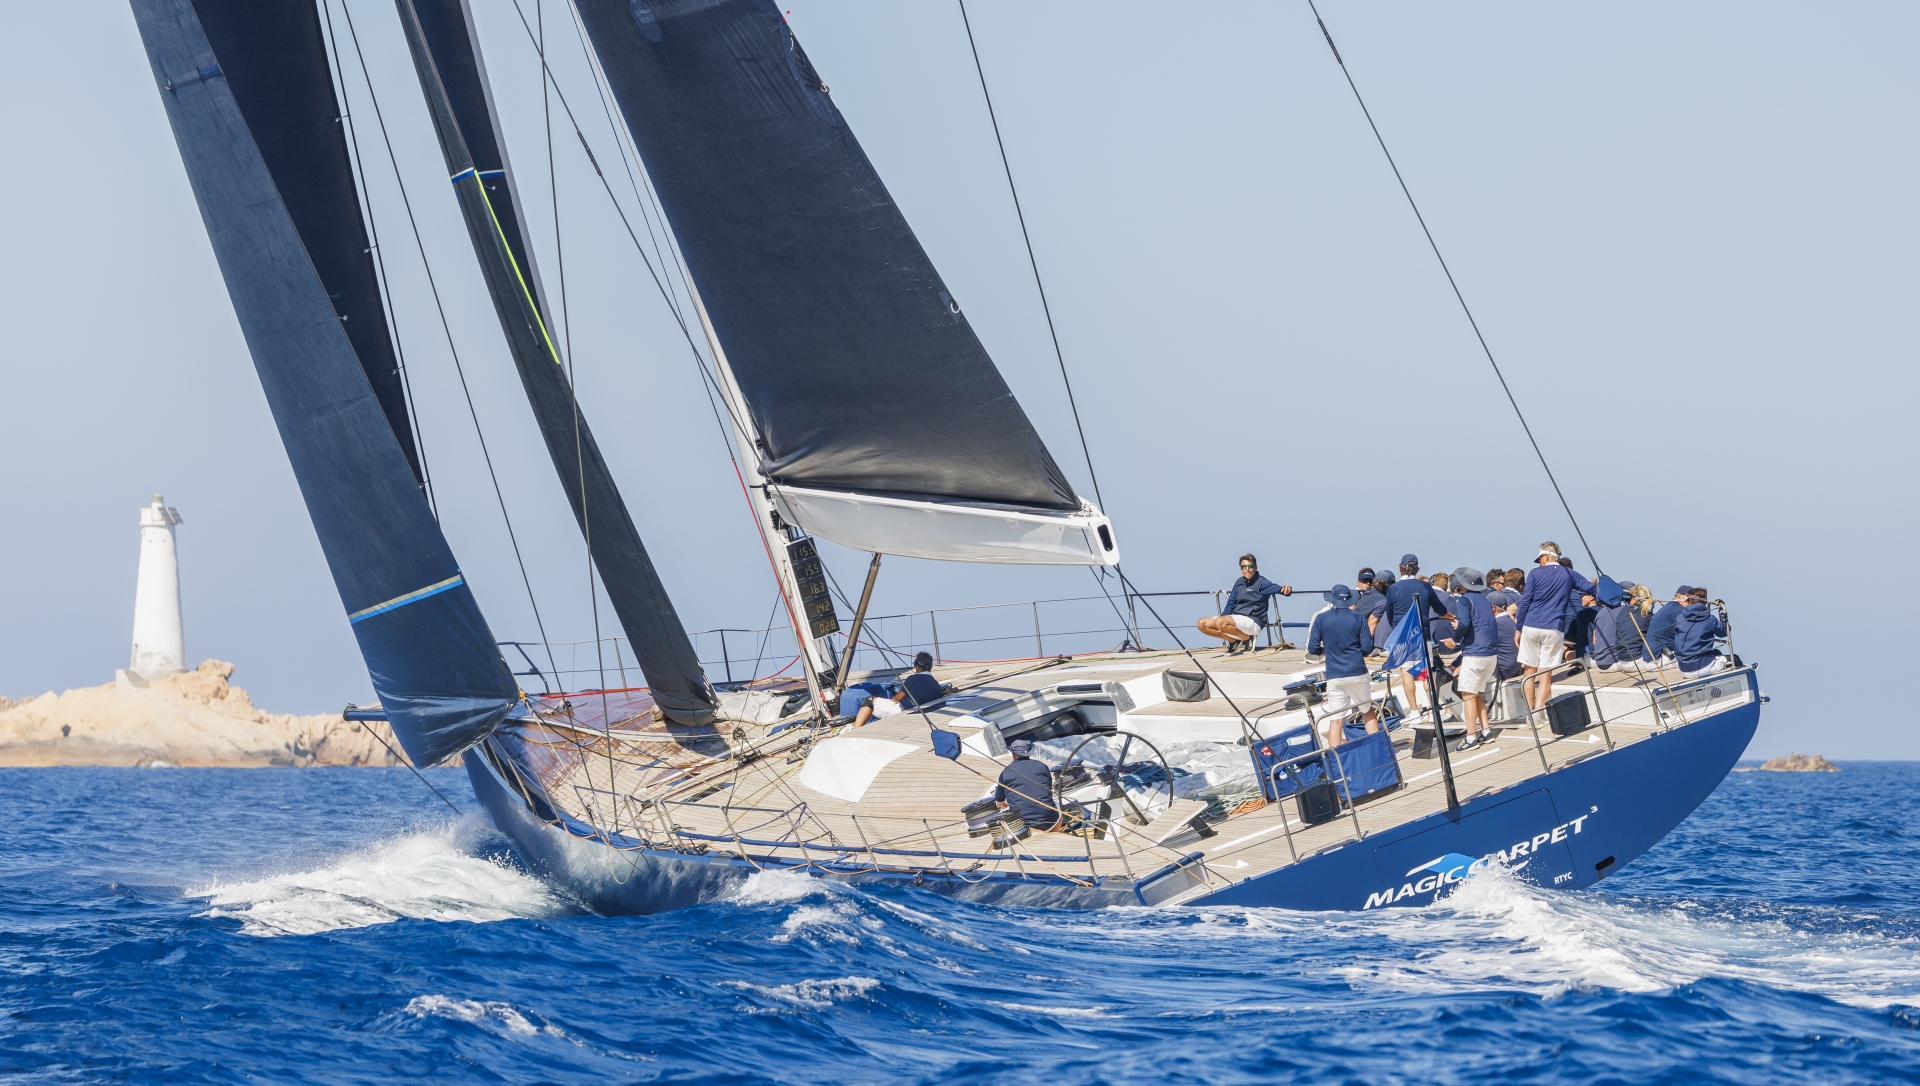 Giorgio Armani Superyacht Regatta, Magic Carpet Cubed takes overall victory - NEWS - Yacht Club Costa Smeralda